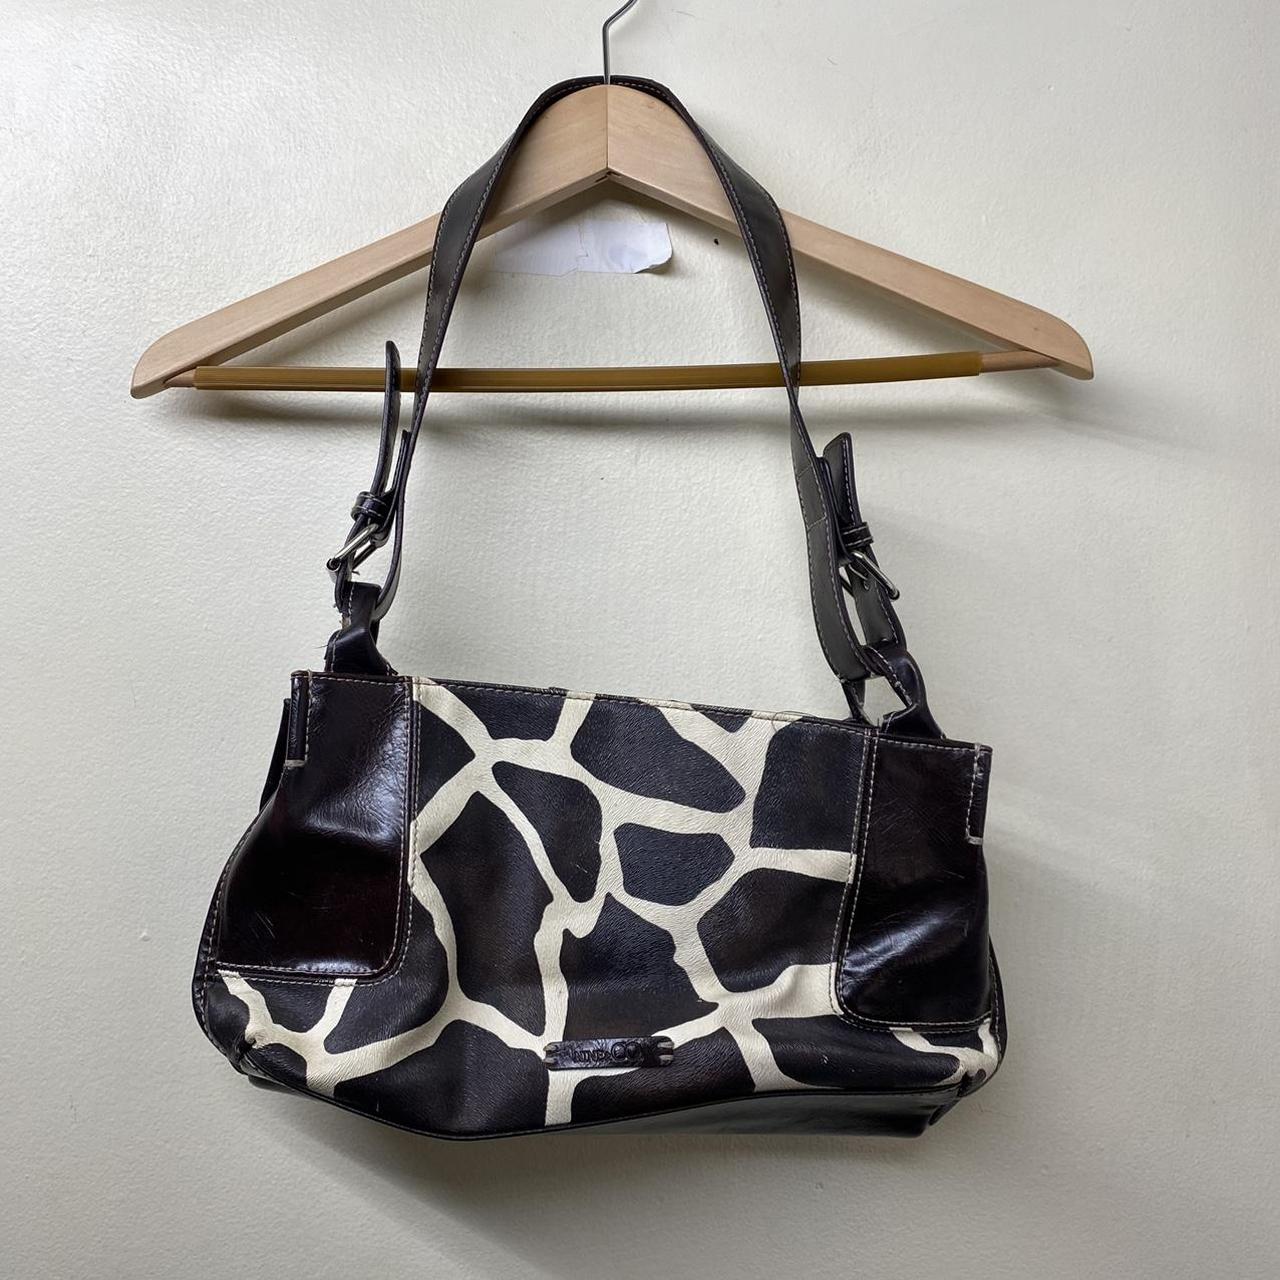 Nine & Co Shoulder Bags for Women for sale | eBay